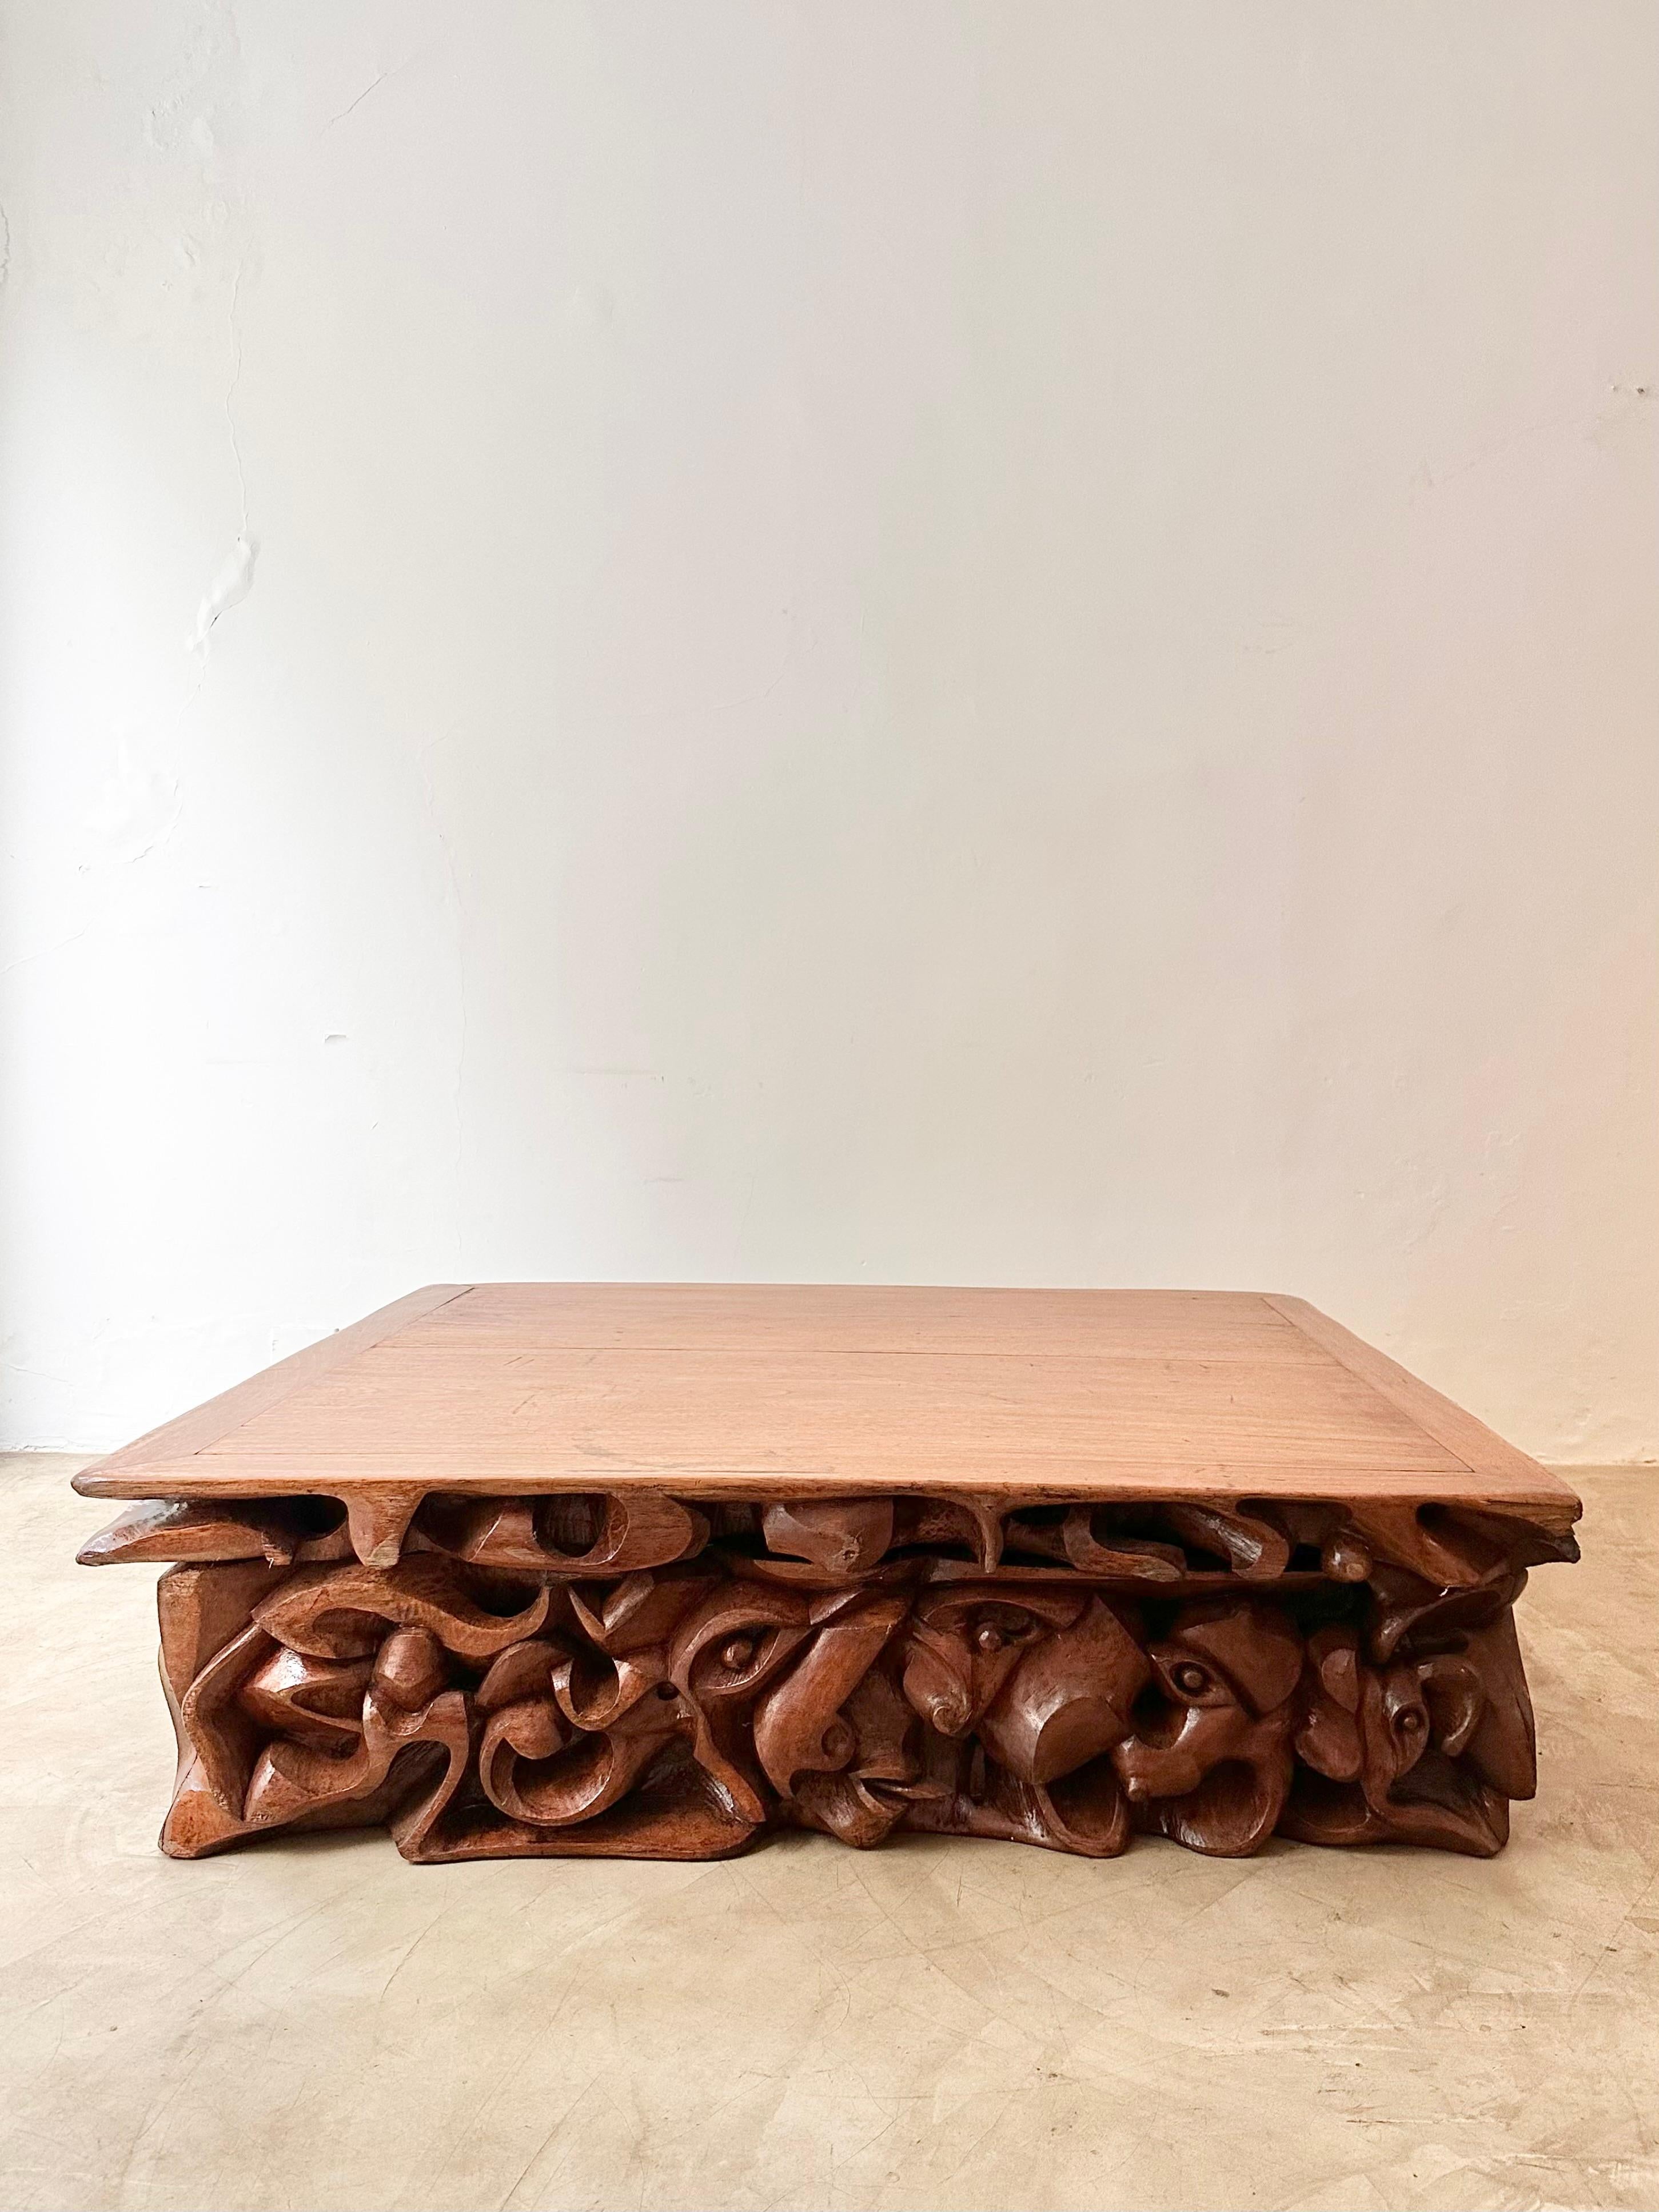 Außergewöhnlicher Mitteltisch, einzigartiges Stück von extremer Schönheit und Nützlichkeit. Hergestellt von Holzmeister C.A Paudalho im brasilianischen Nordosten in den 1970er Jahren. Dieser große Künstler hat einige Sonderanfertigungen gemacht, und